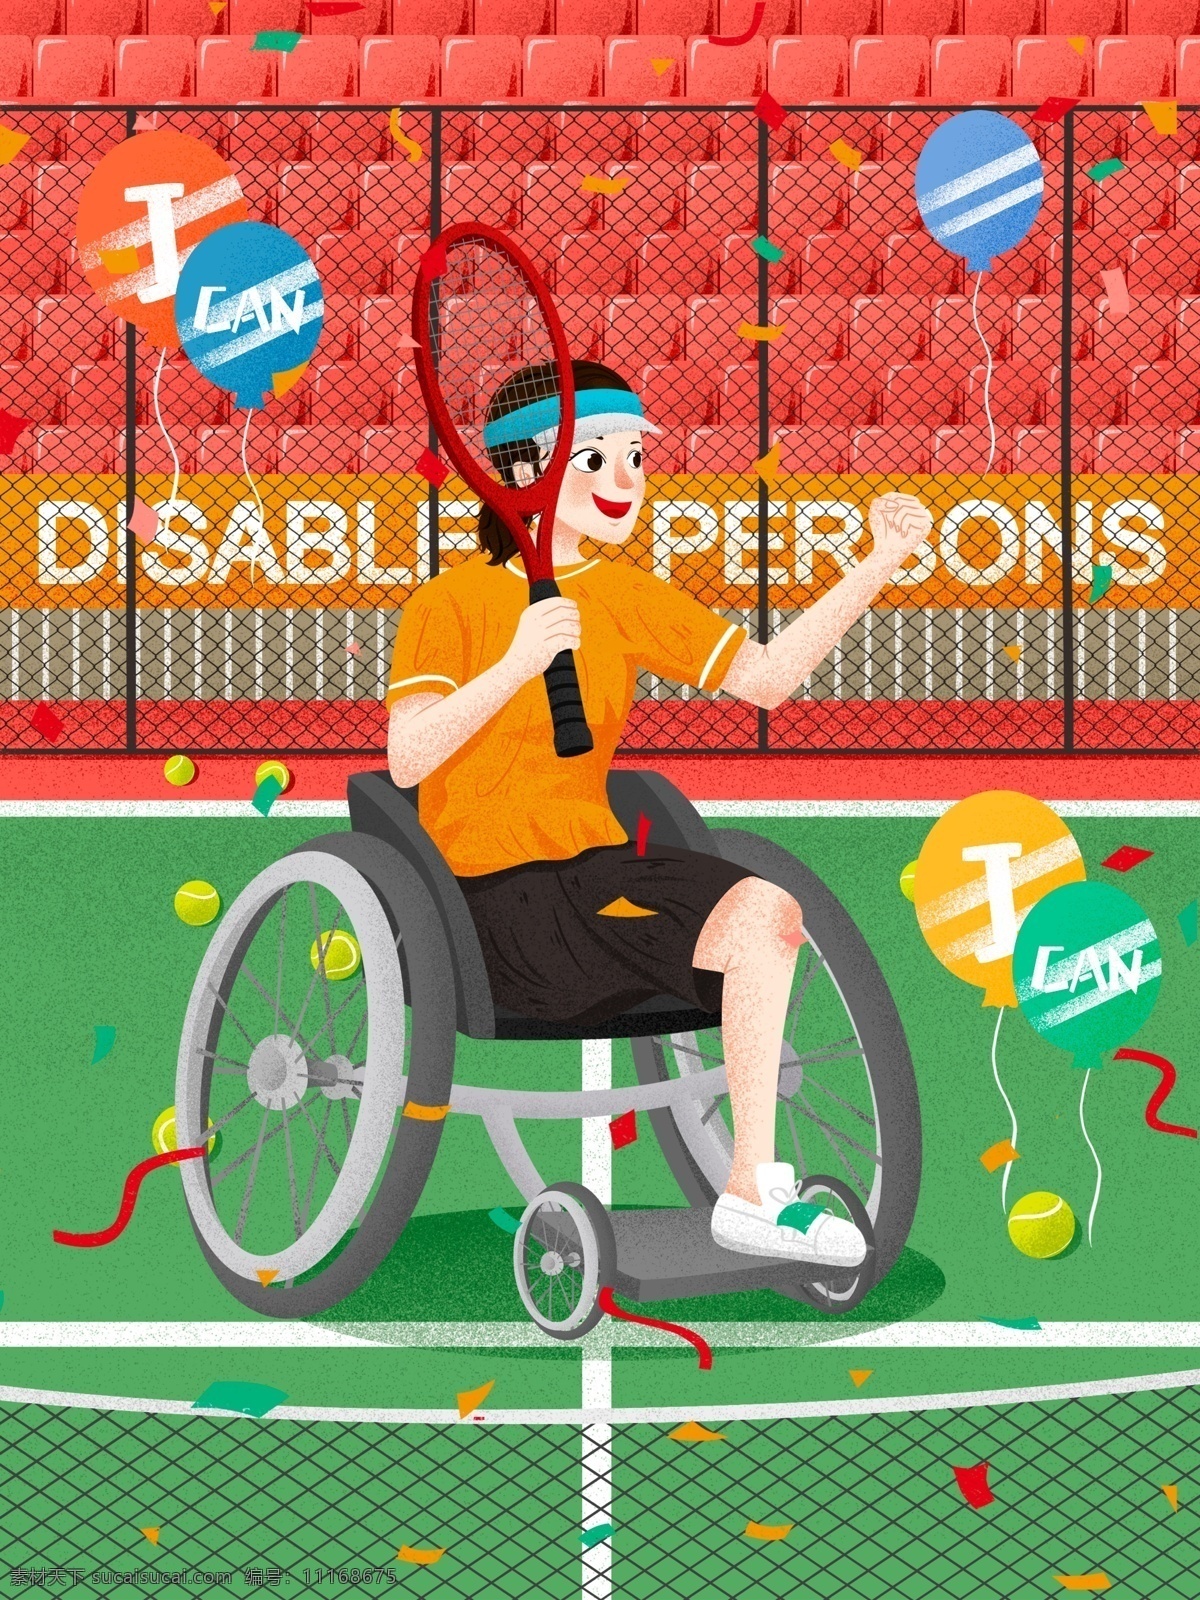 国际 残疾 人日 女孩 网球场 上 风采 插画 残疾人 网球 网球拍 气球 国际残疾人日 残疾人日 残疾女孩 打网球 励志女孩 身残志不残 网球比赛